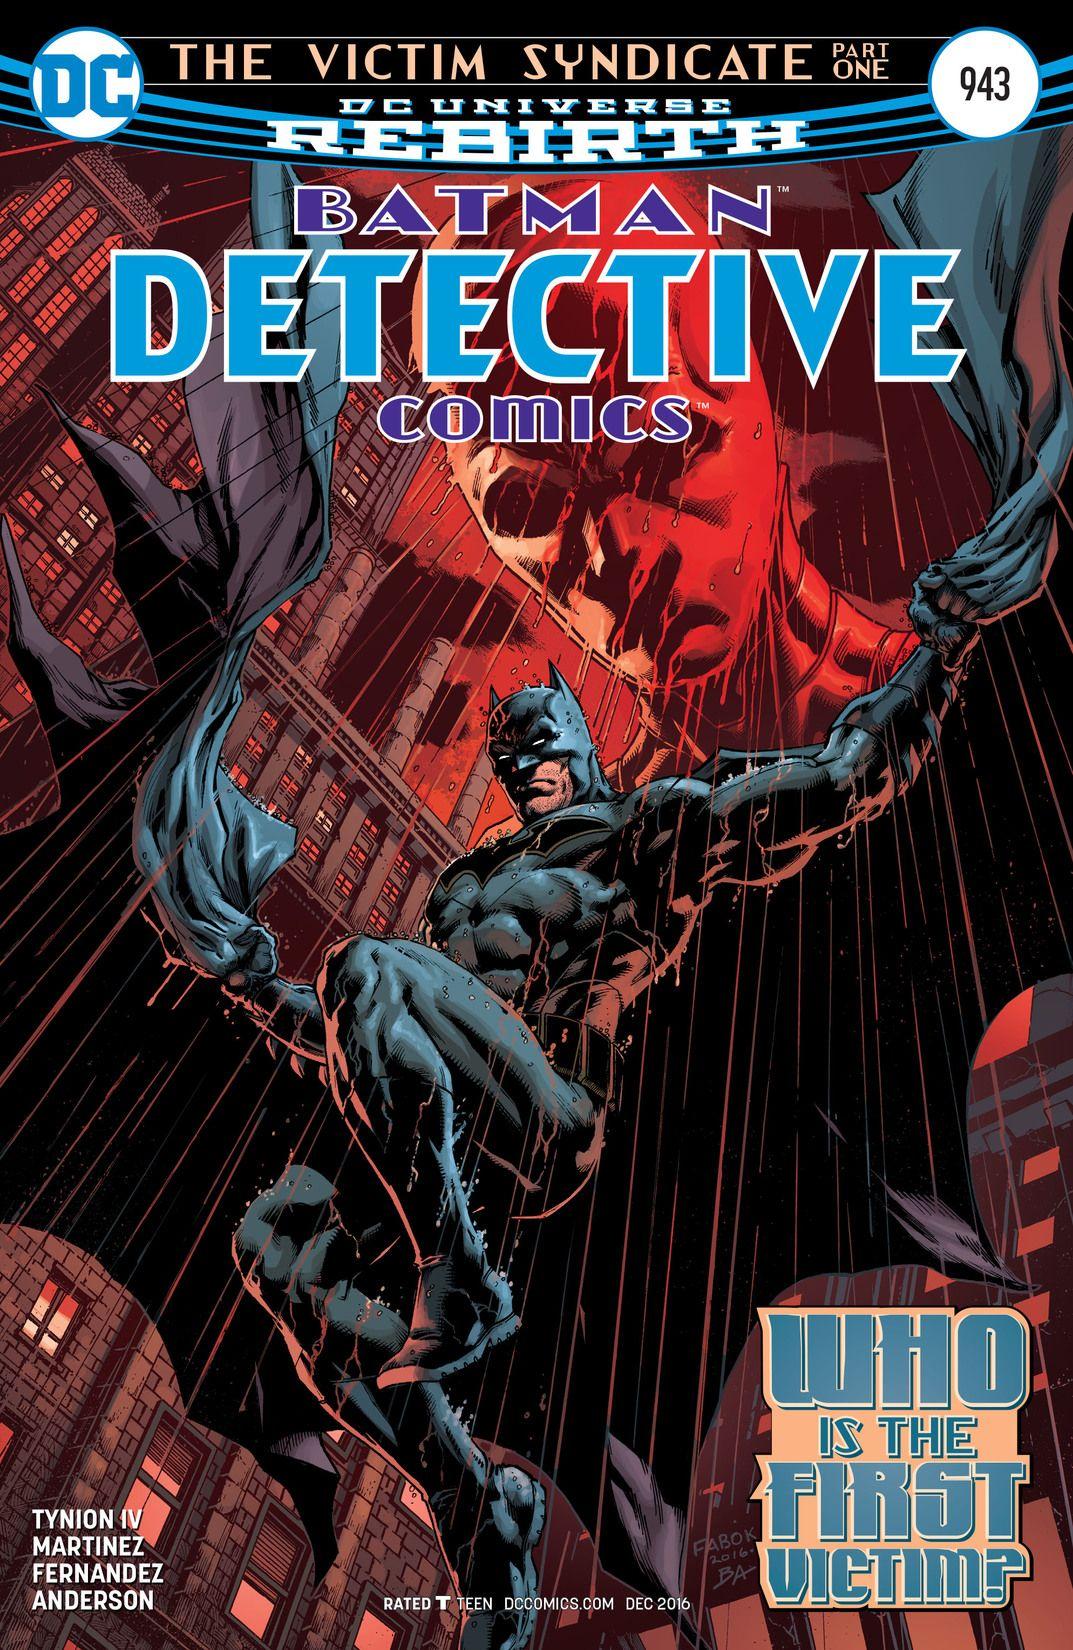 Detective Comics Vol. 1 #943